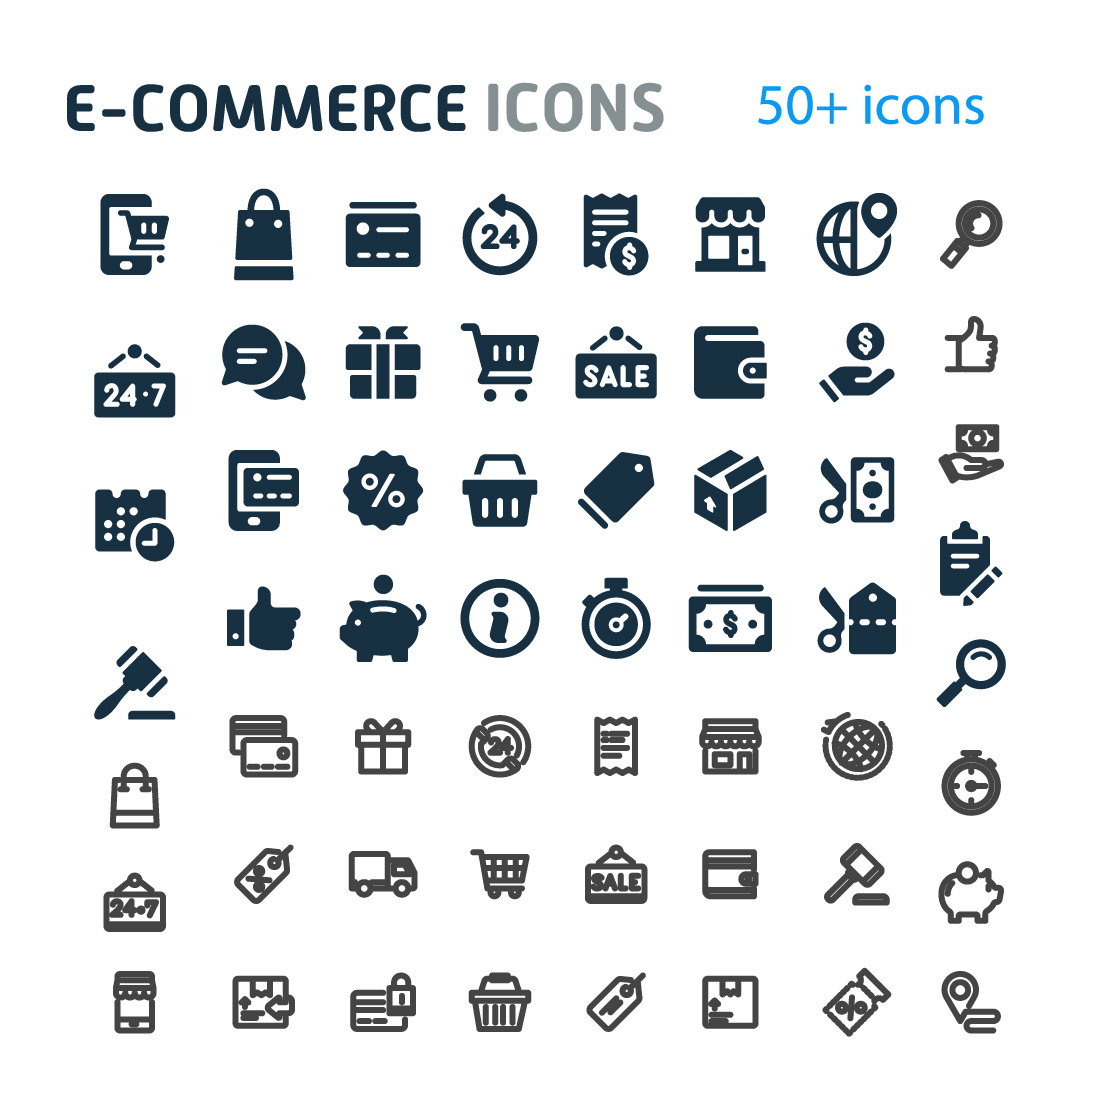 Large set of e - commerce icons.